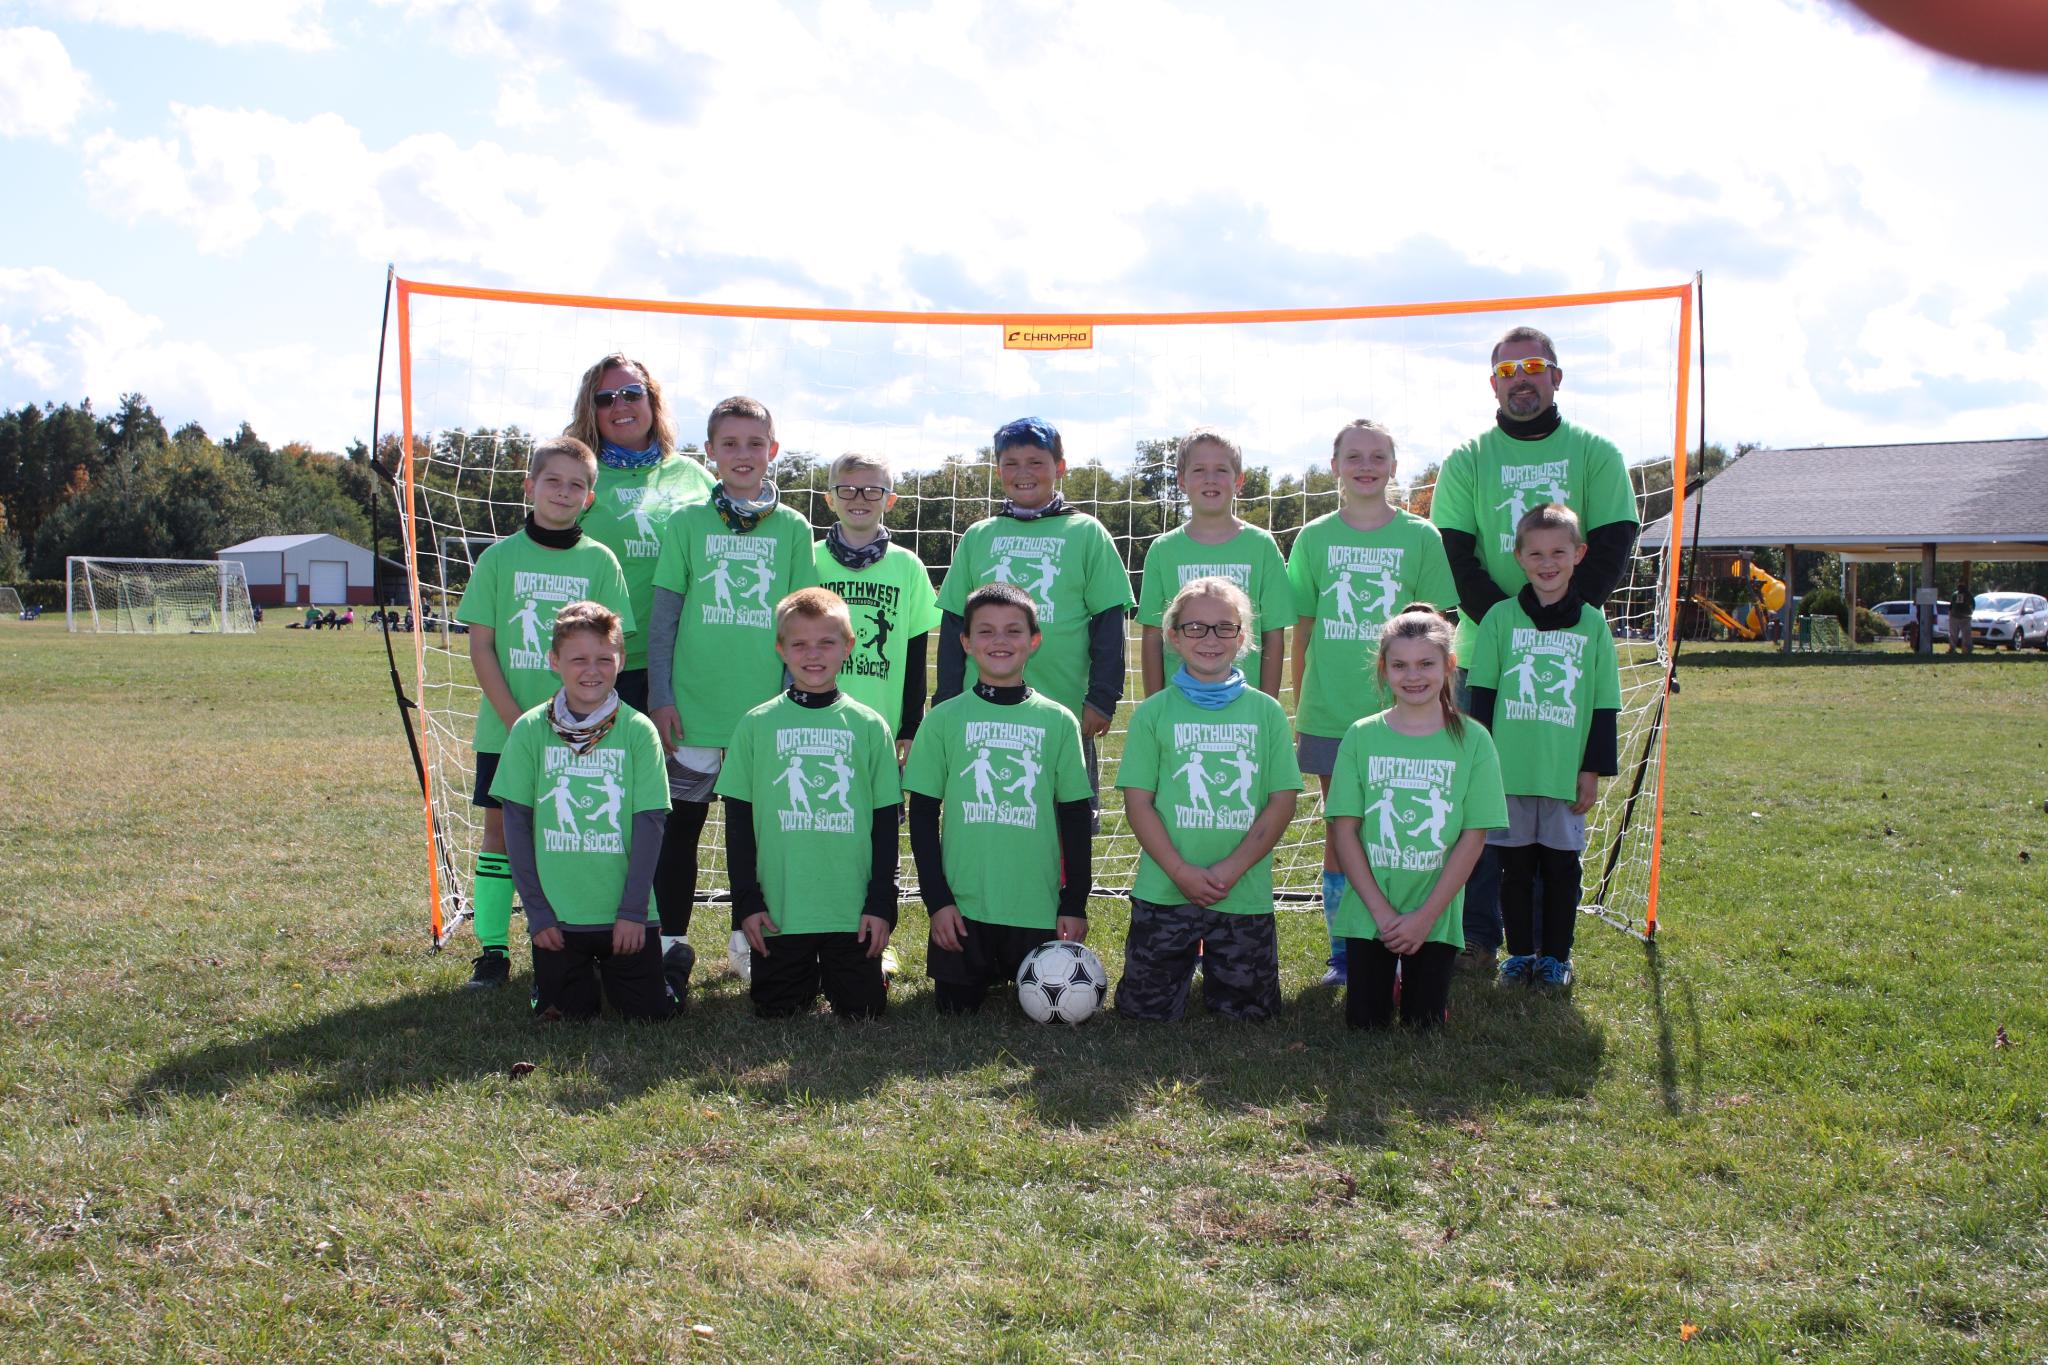 2020 Lime Green Team (4th-6th Grades' League)